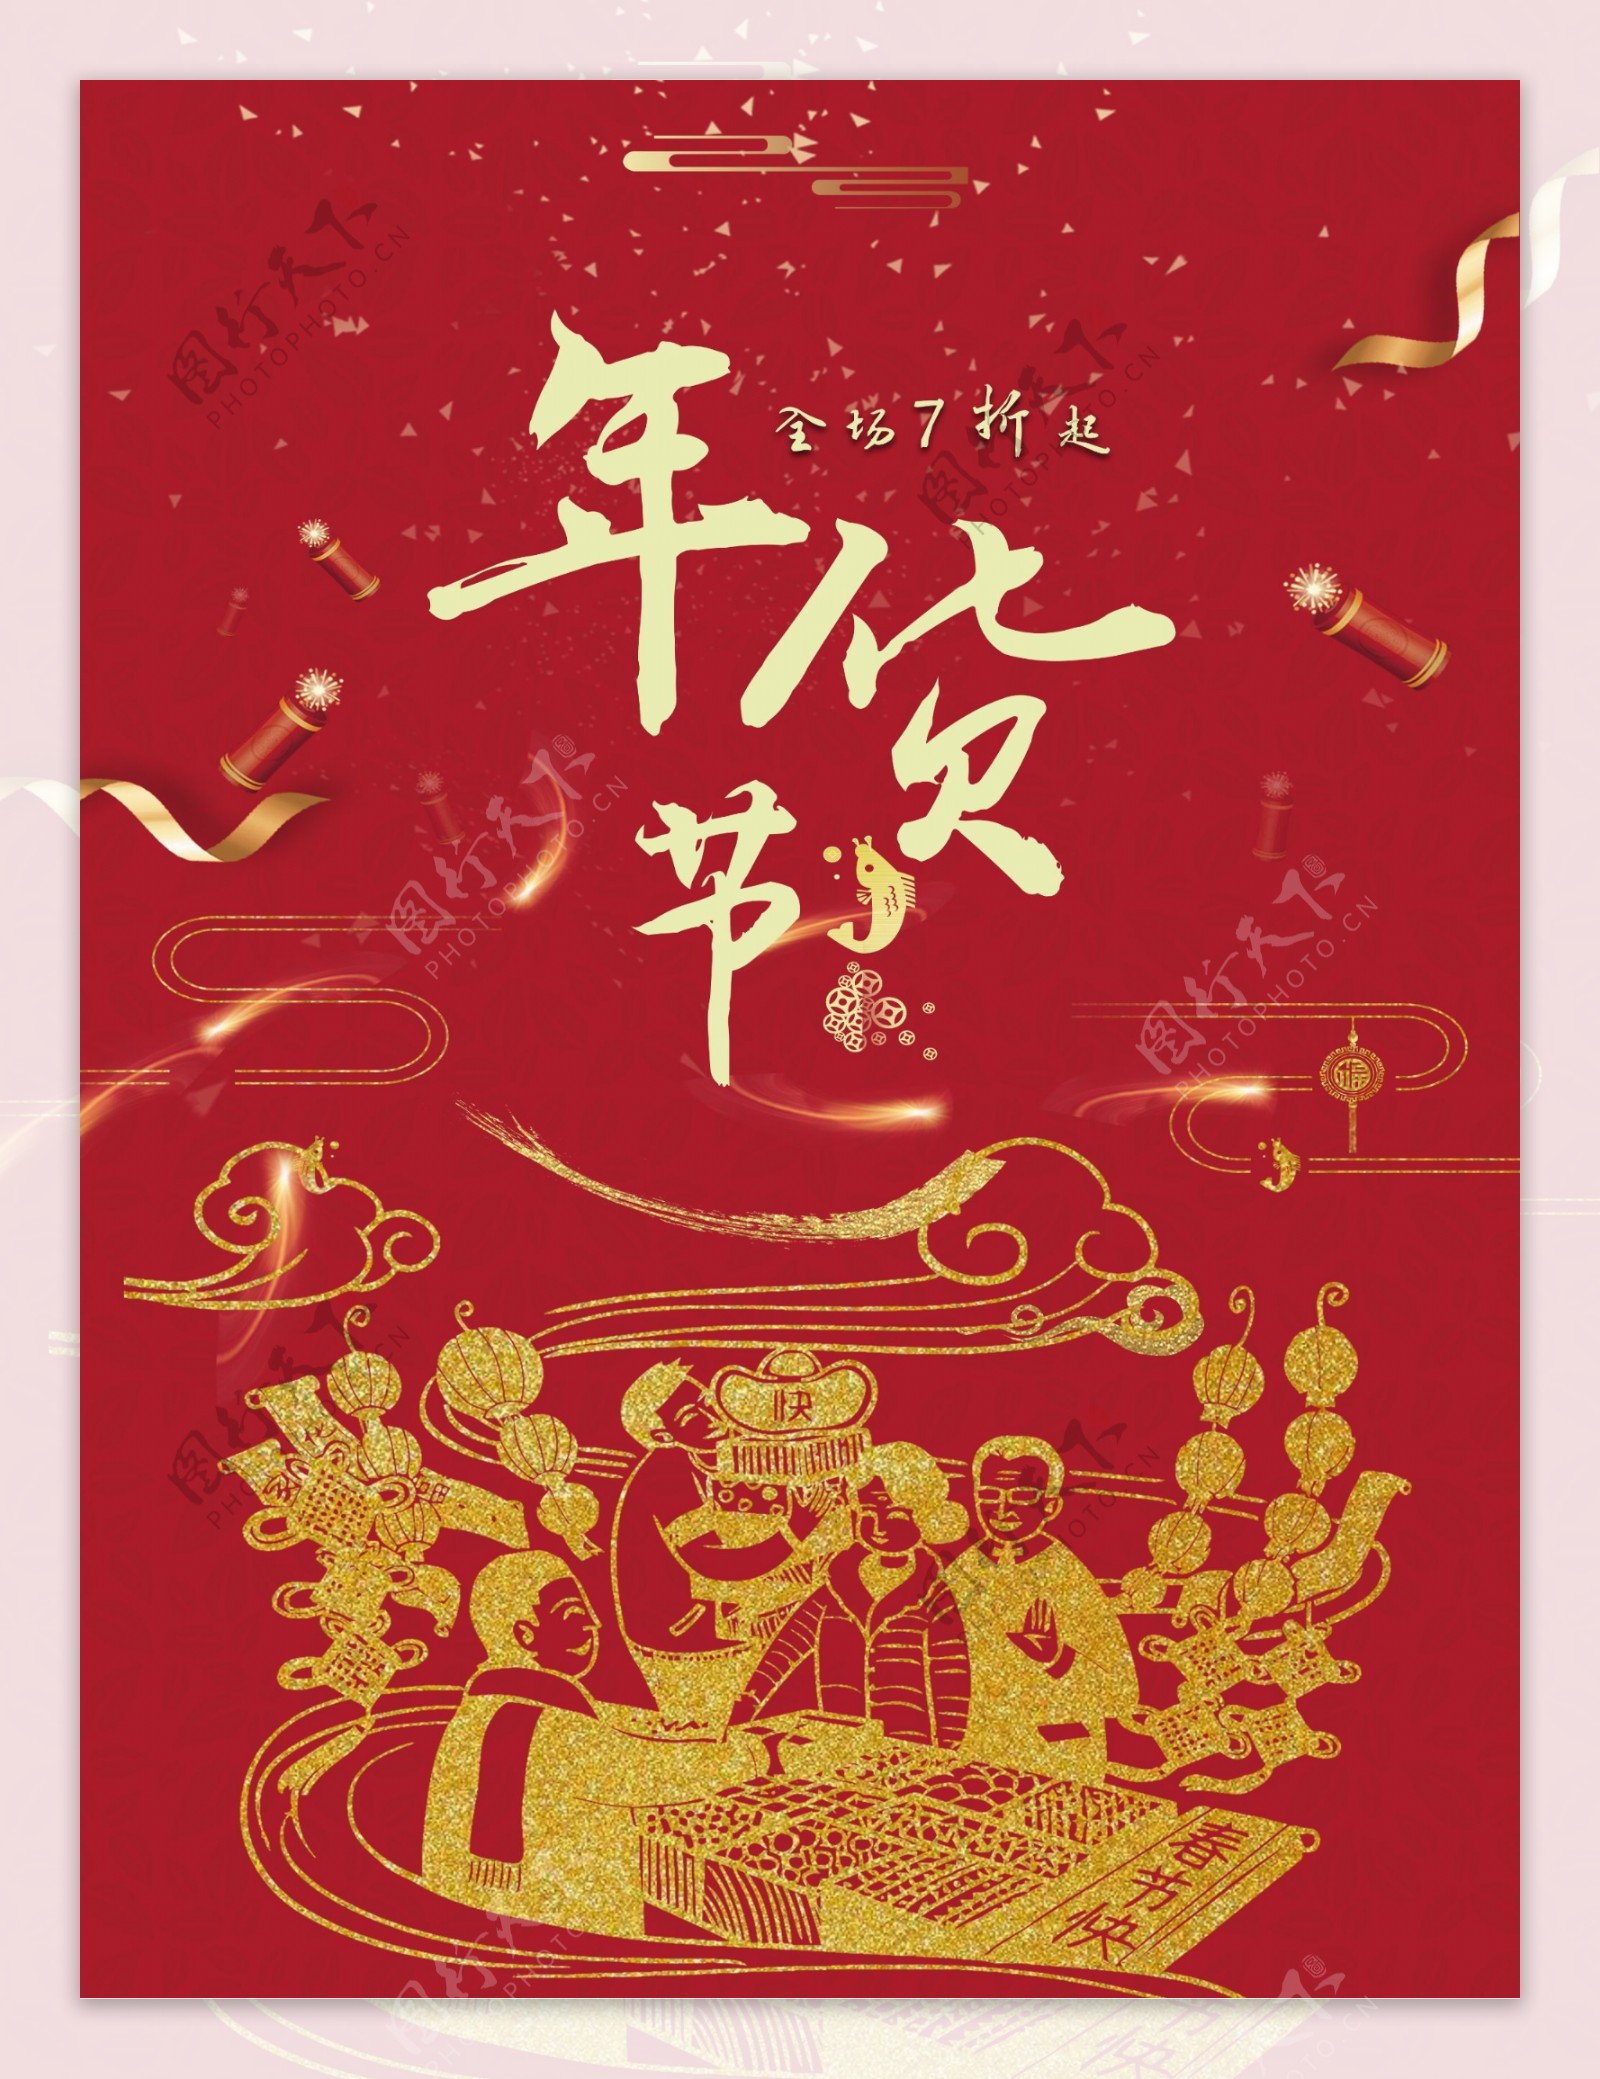 2018年货节新春活动宣传海报